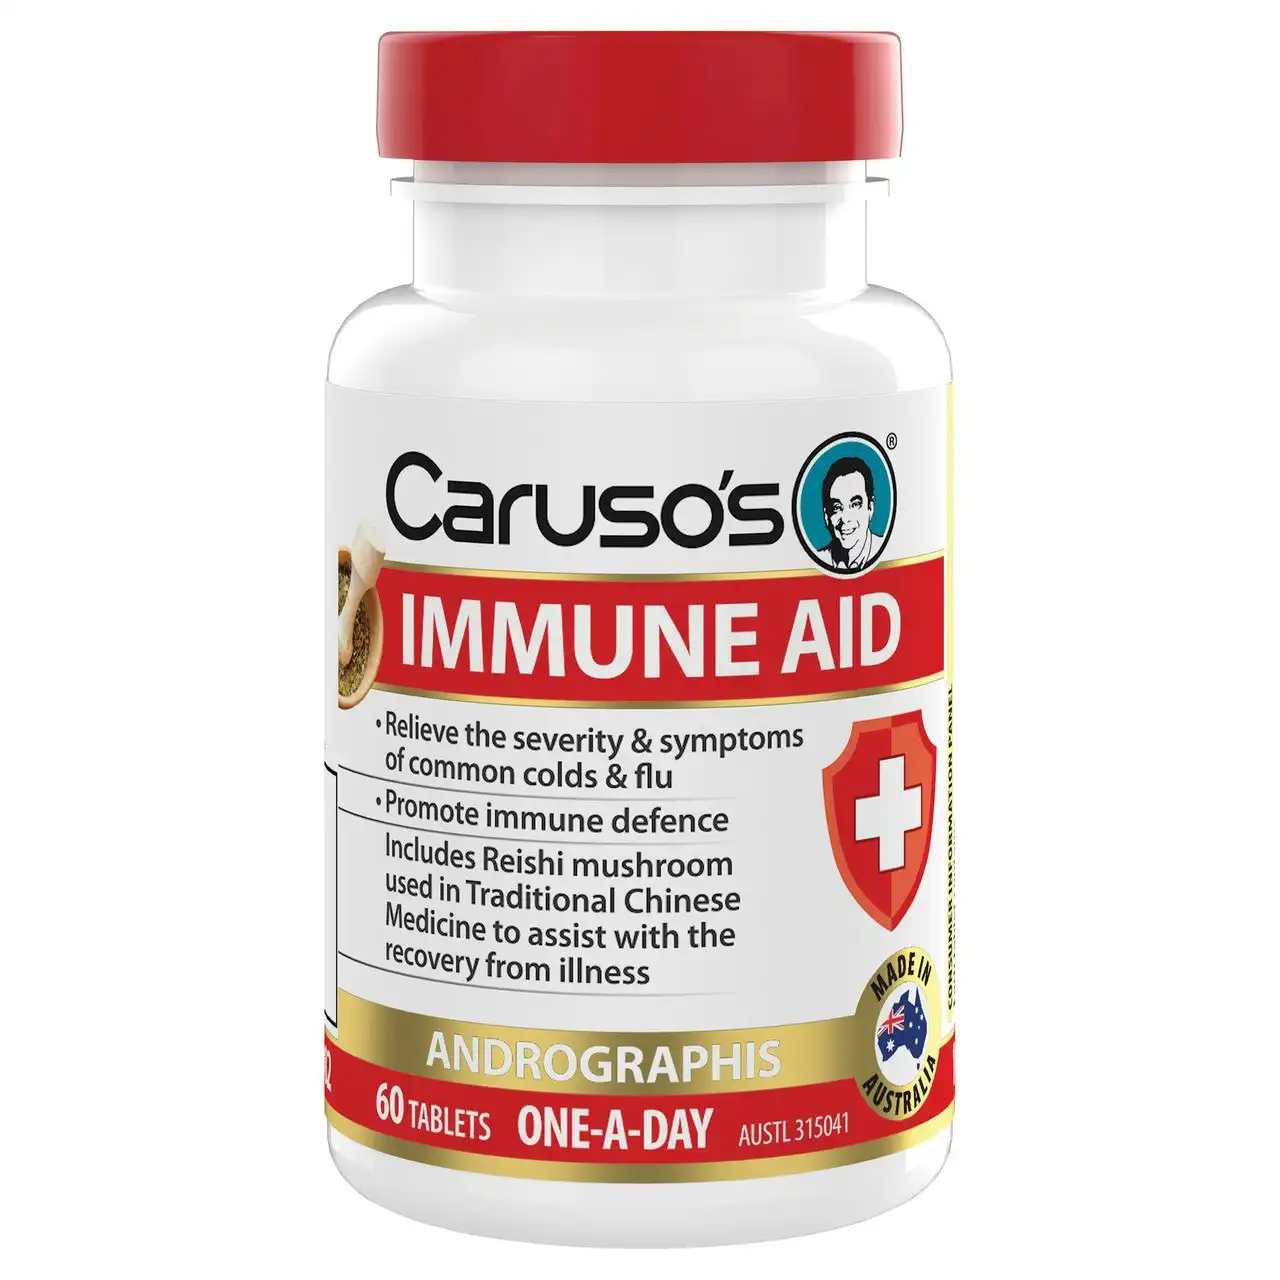 Caruso's Immune Aid